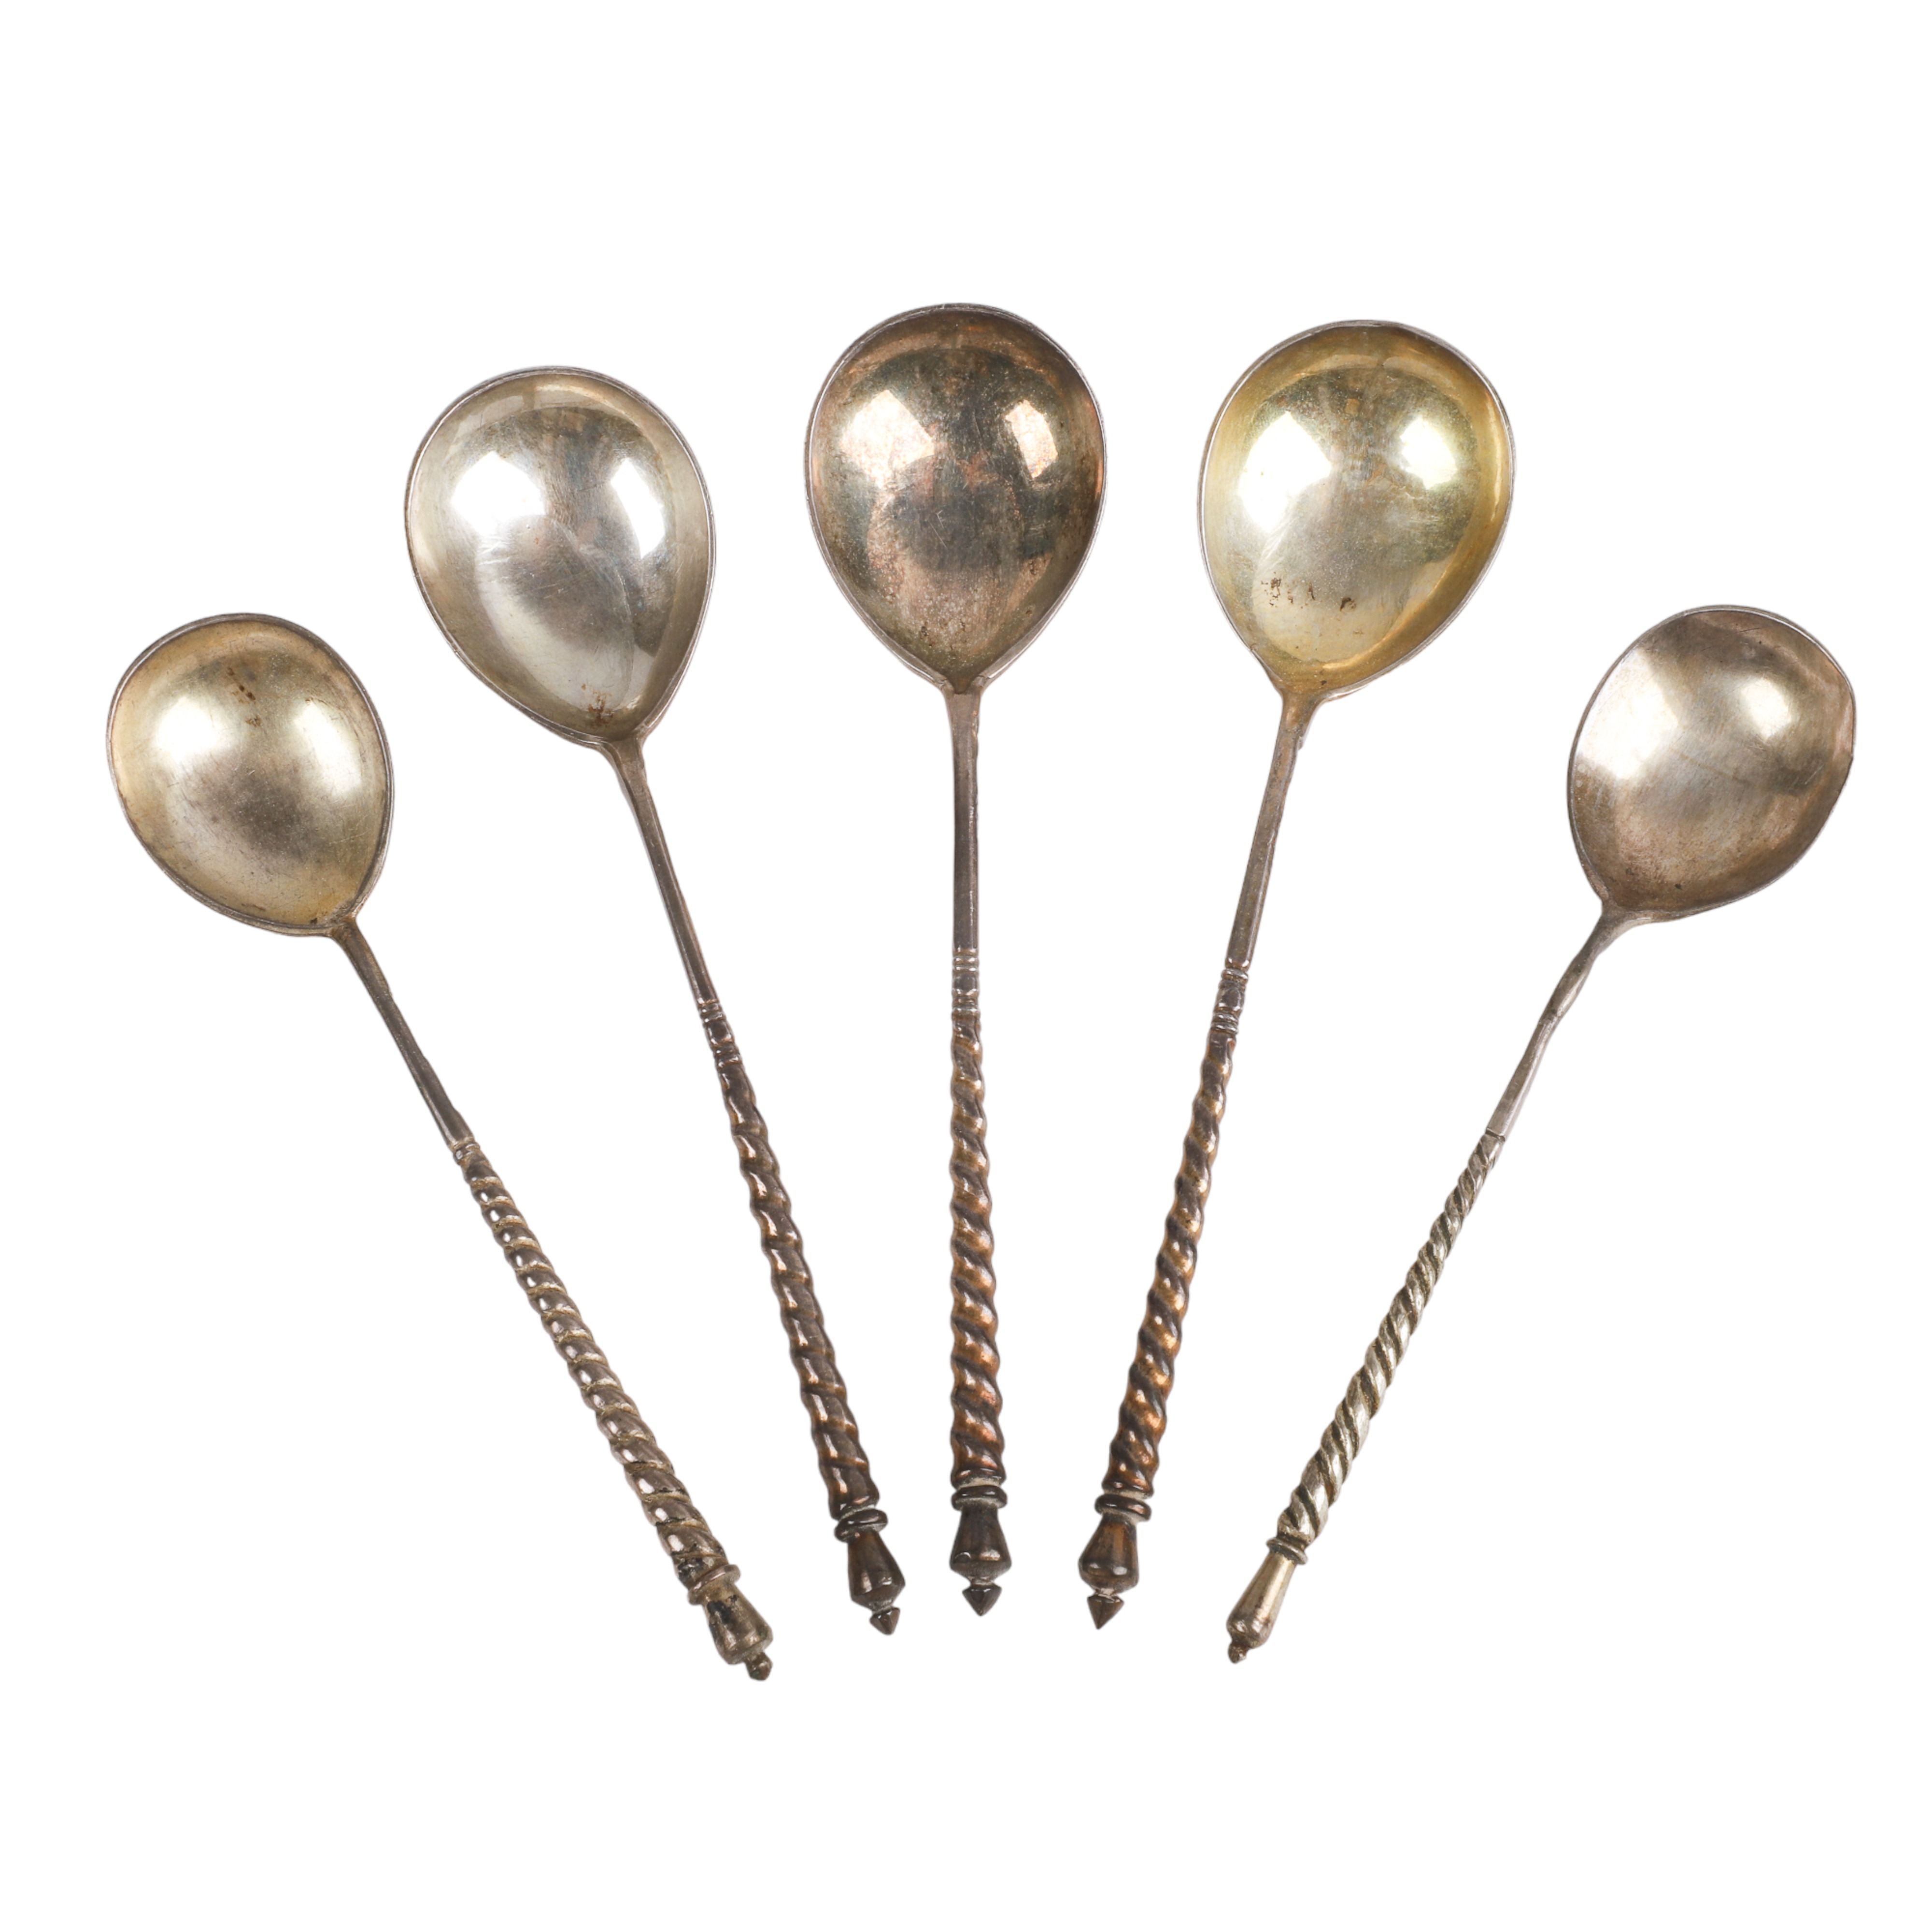  5 Russian silver spoons 3  3ca5e0